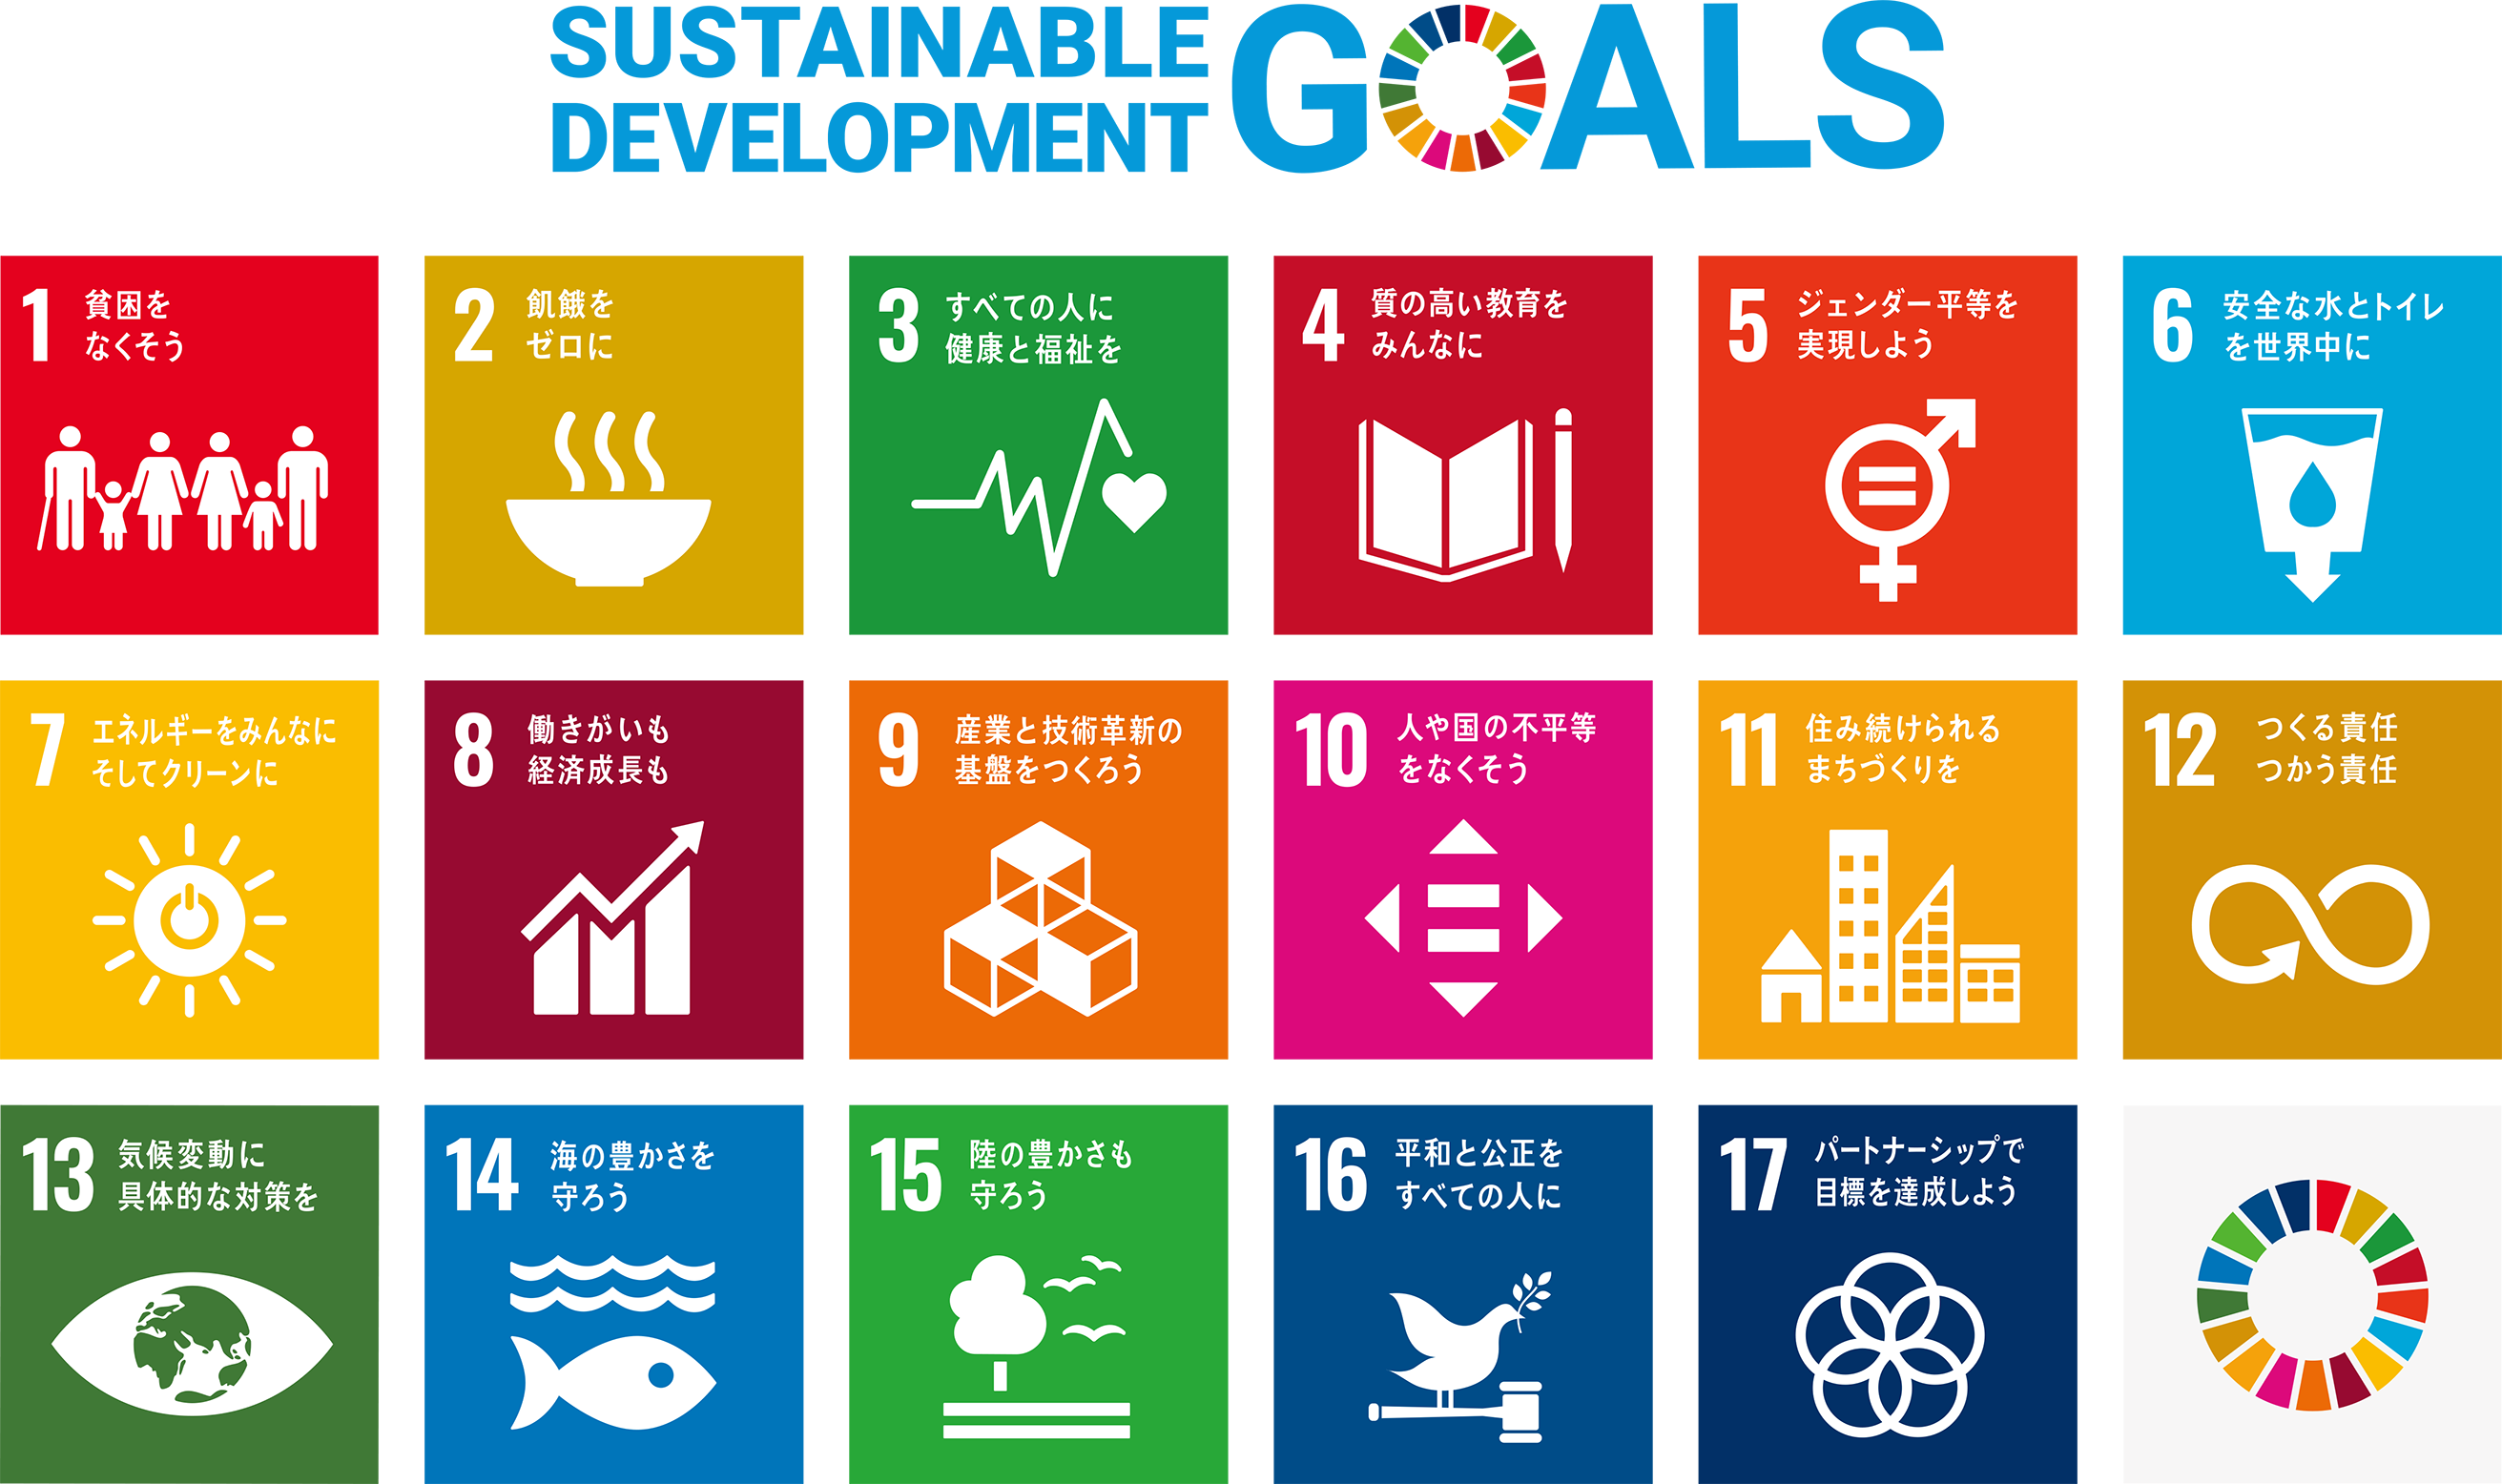 SDGs （Sustainable Development Goals、エス・ディージーズ）